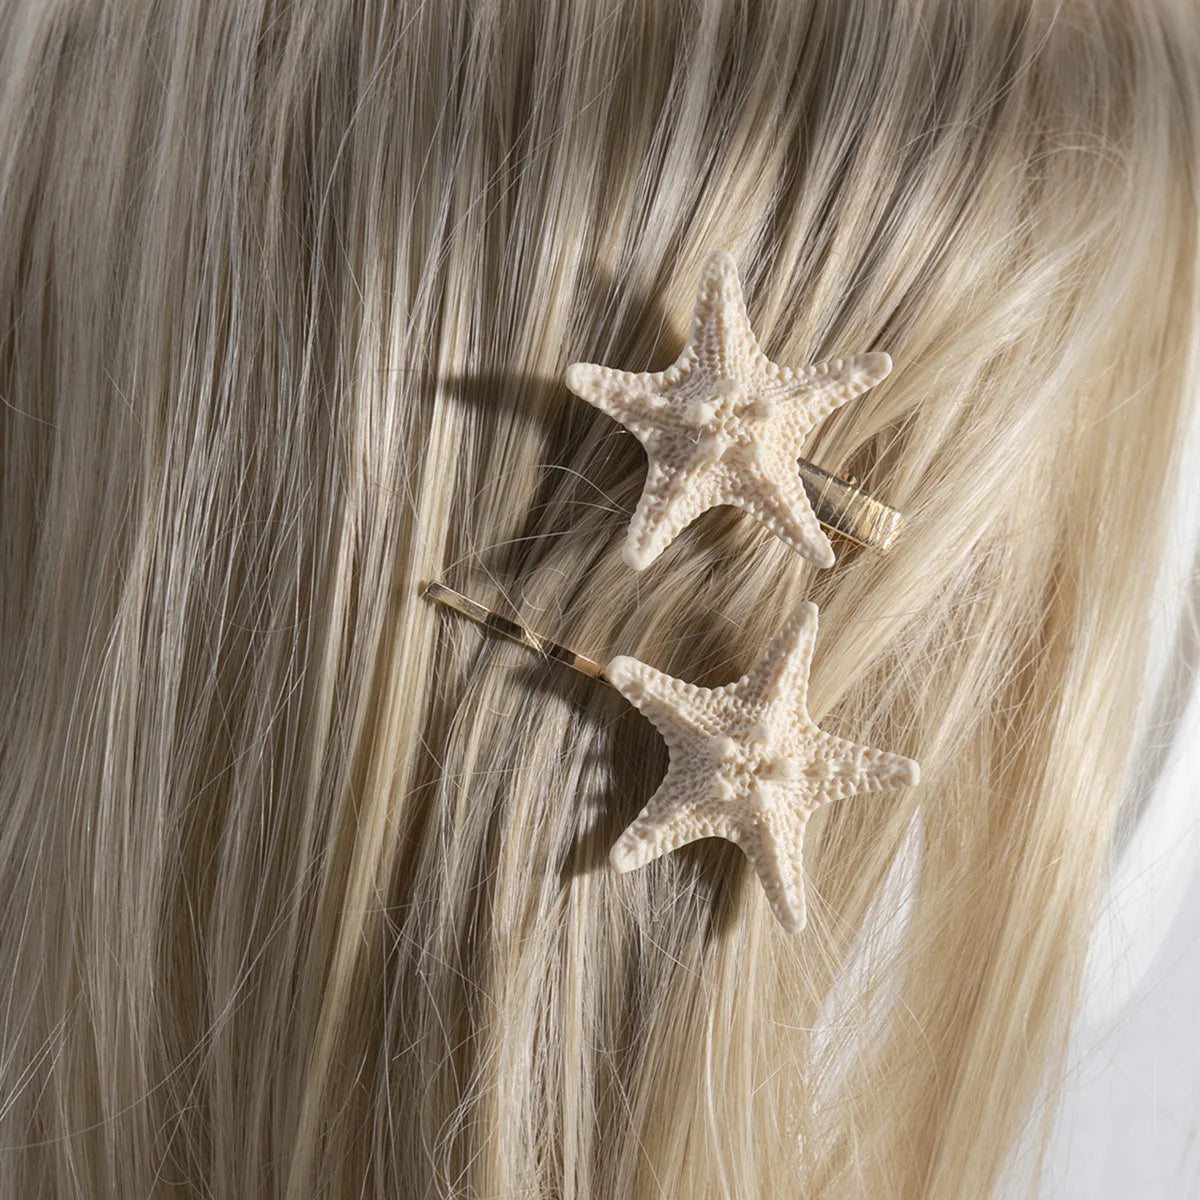 2 STÜCKE Seestern Seestern Haarnadel Natürliche Elegante Haarspange Haarklammern Kopfbedeckung Kopfschmuck Schmuck Für Frauen Mädchen Haarschmuck